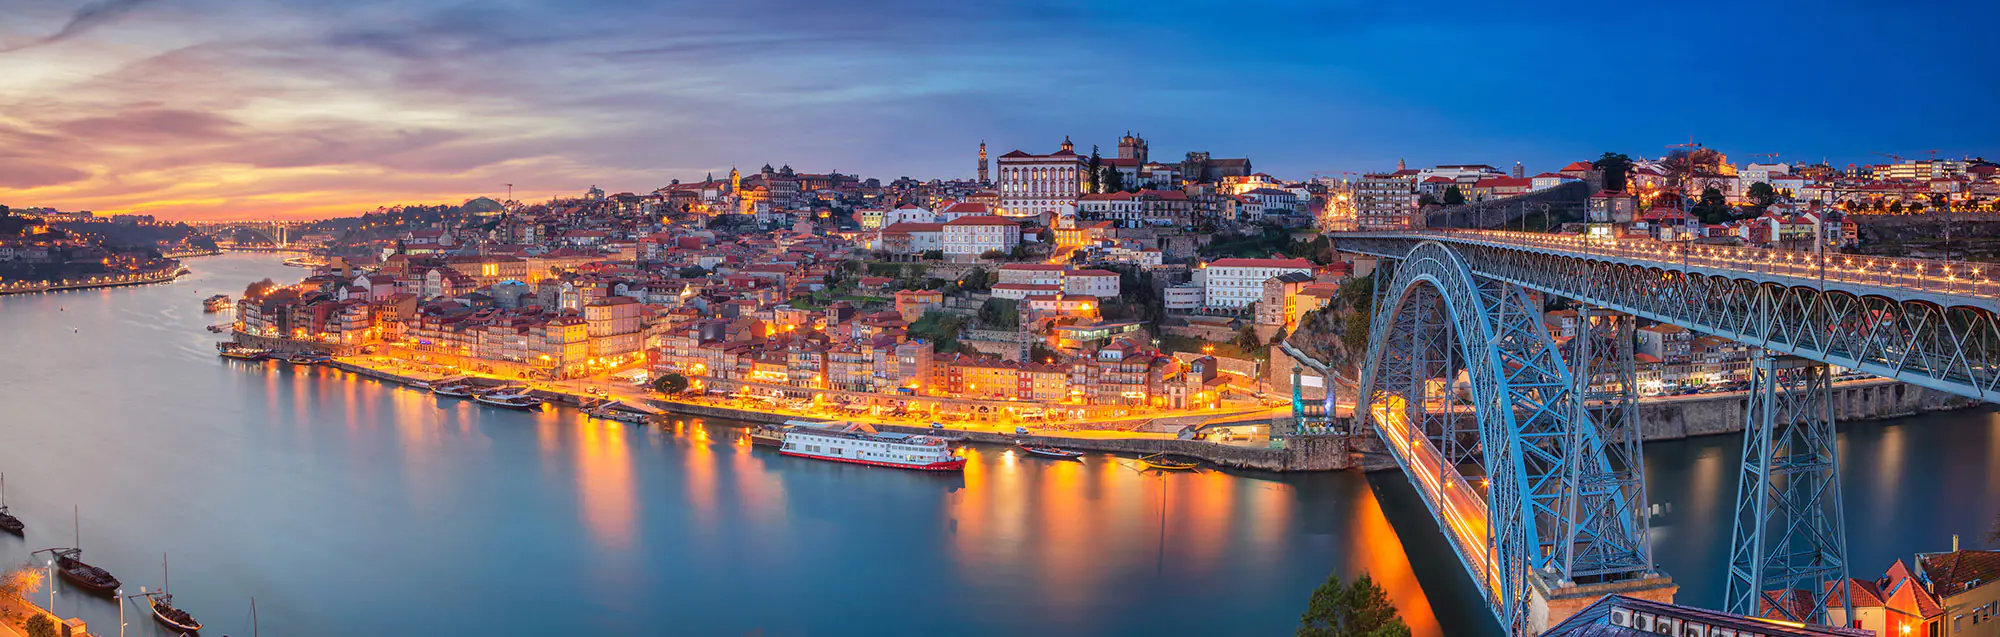 Liste der Sprachschulen in Porto für Erwachsene und Jugendliche